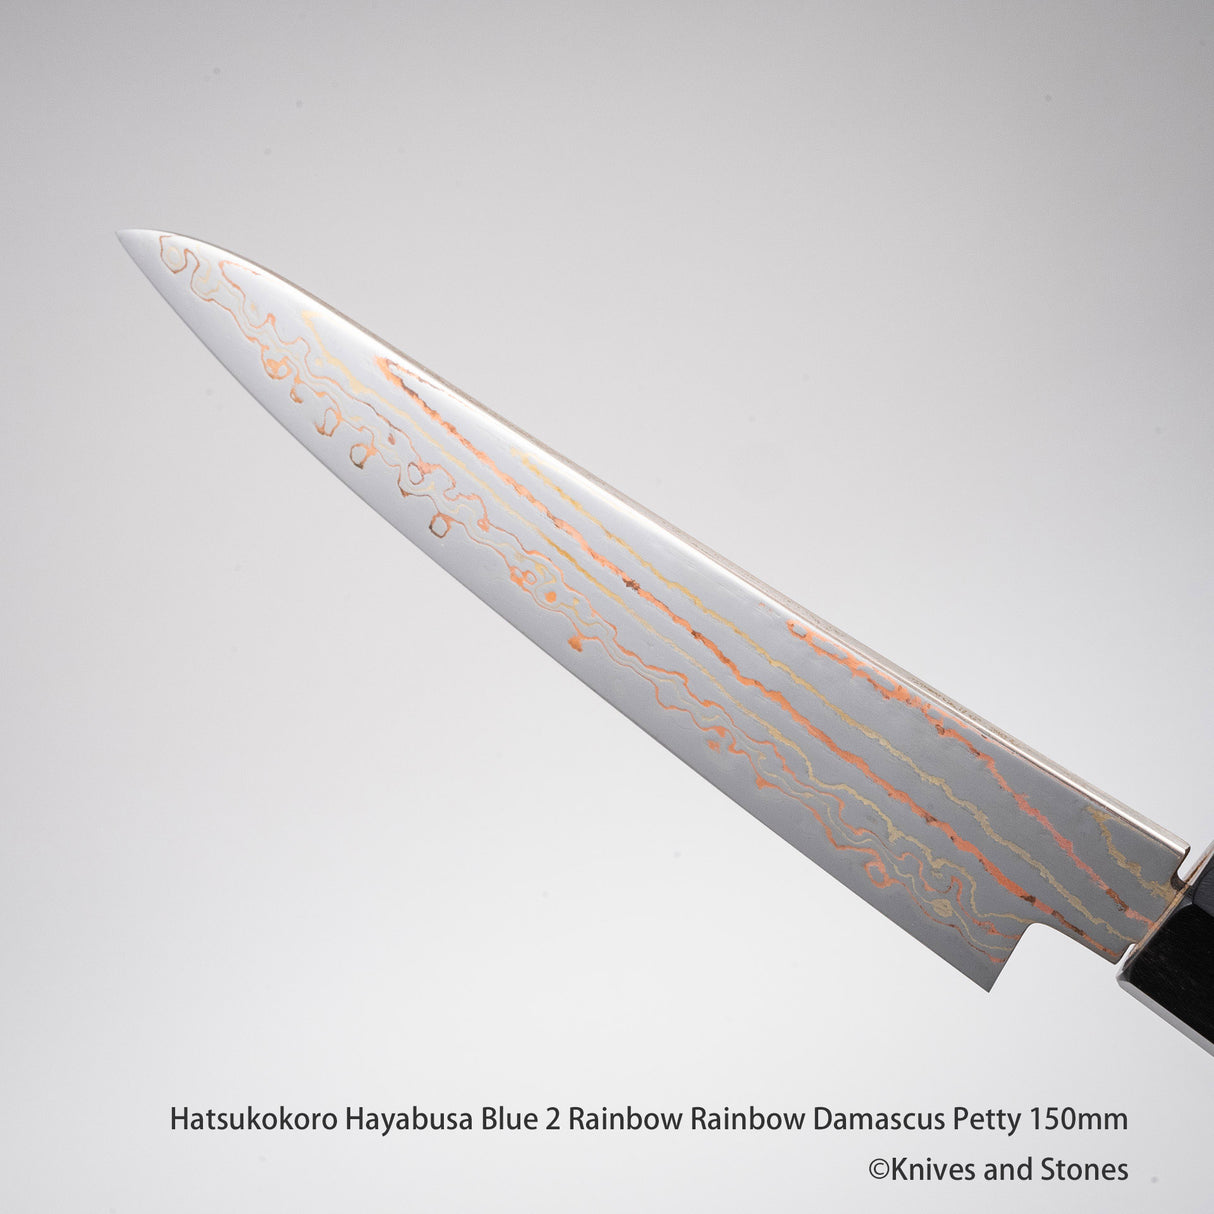 Hatsukokoro Hayabusa Blue 2 Rainbow Rainbow Damascus Petty 150mm